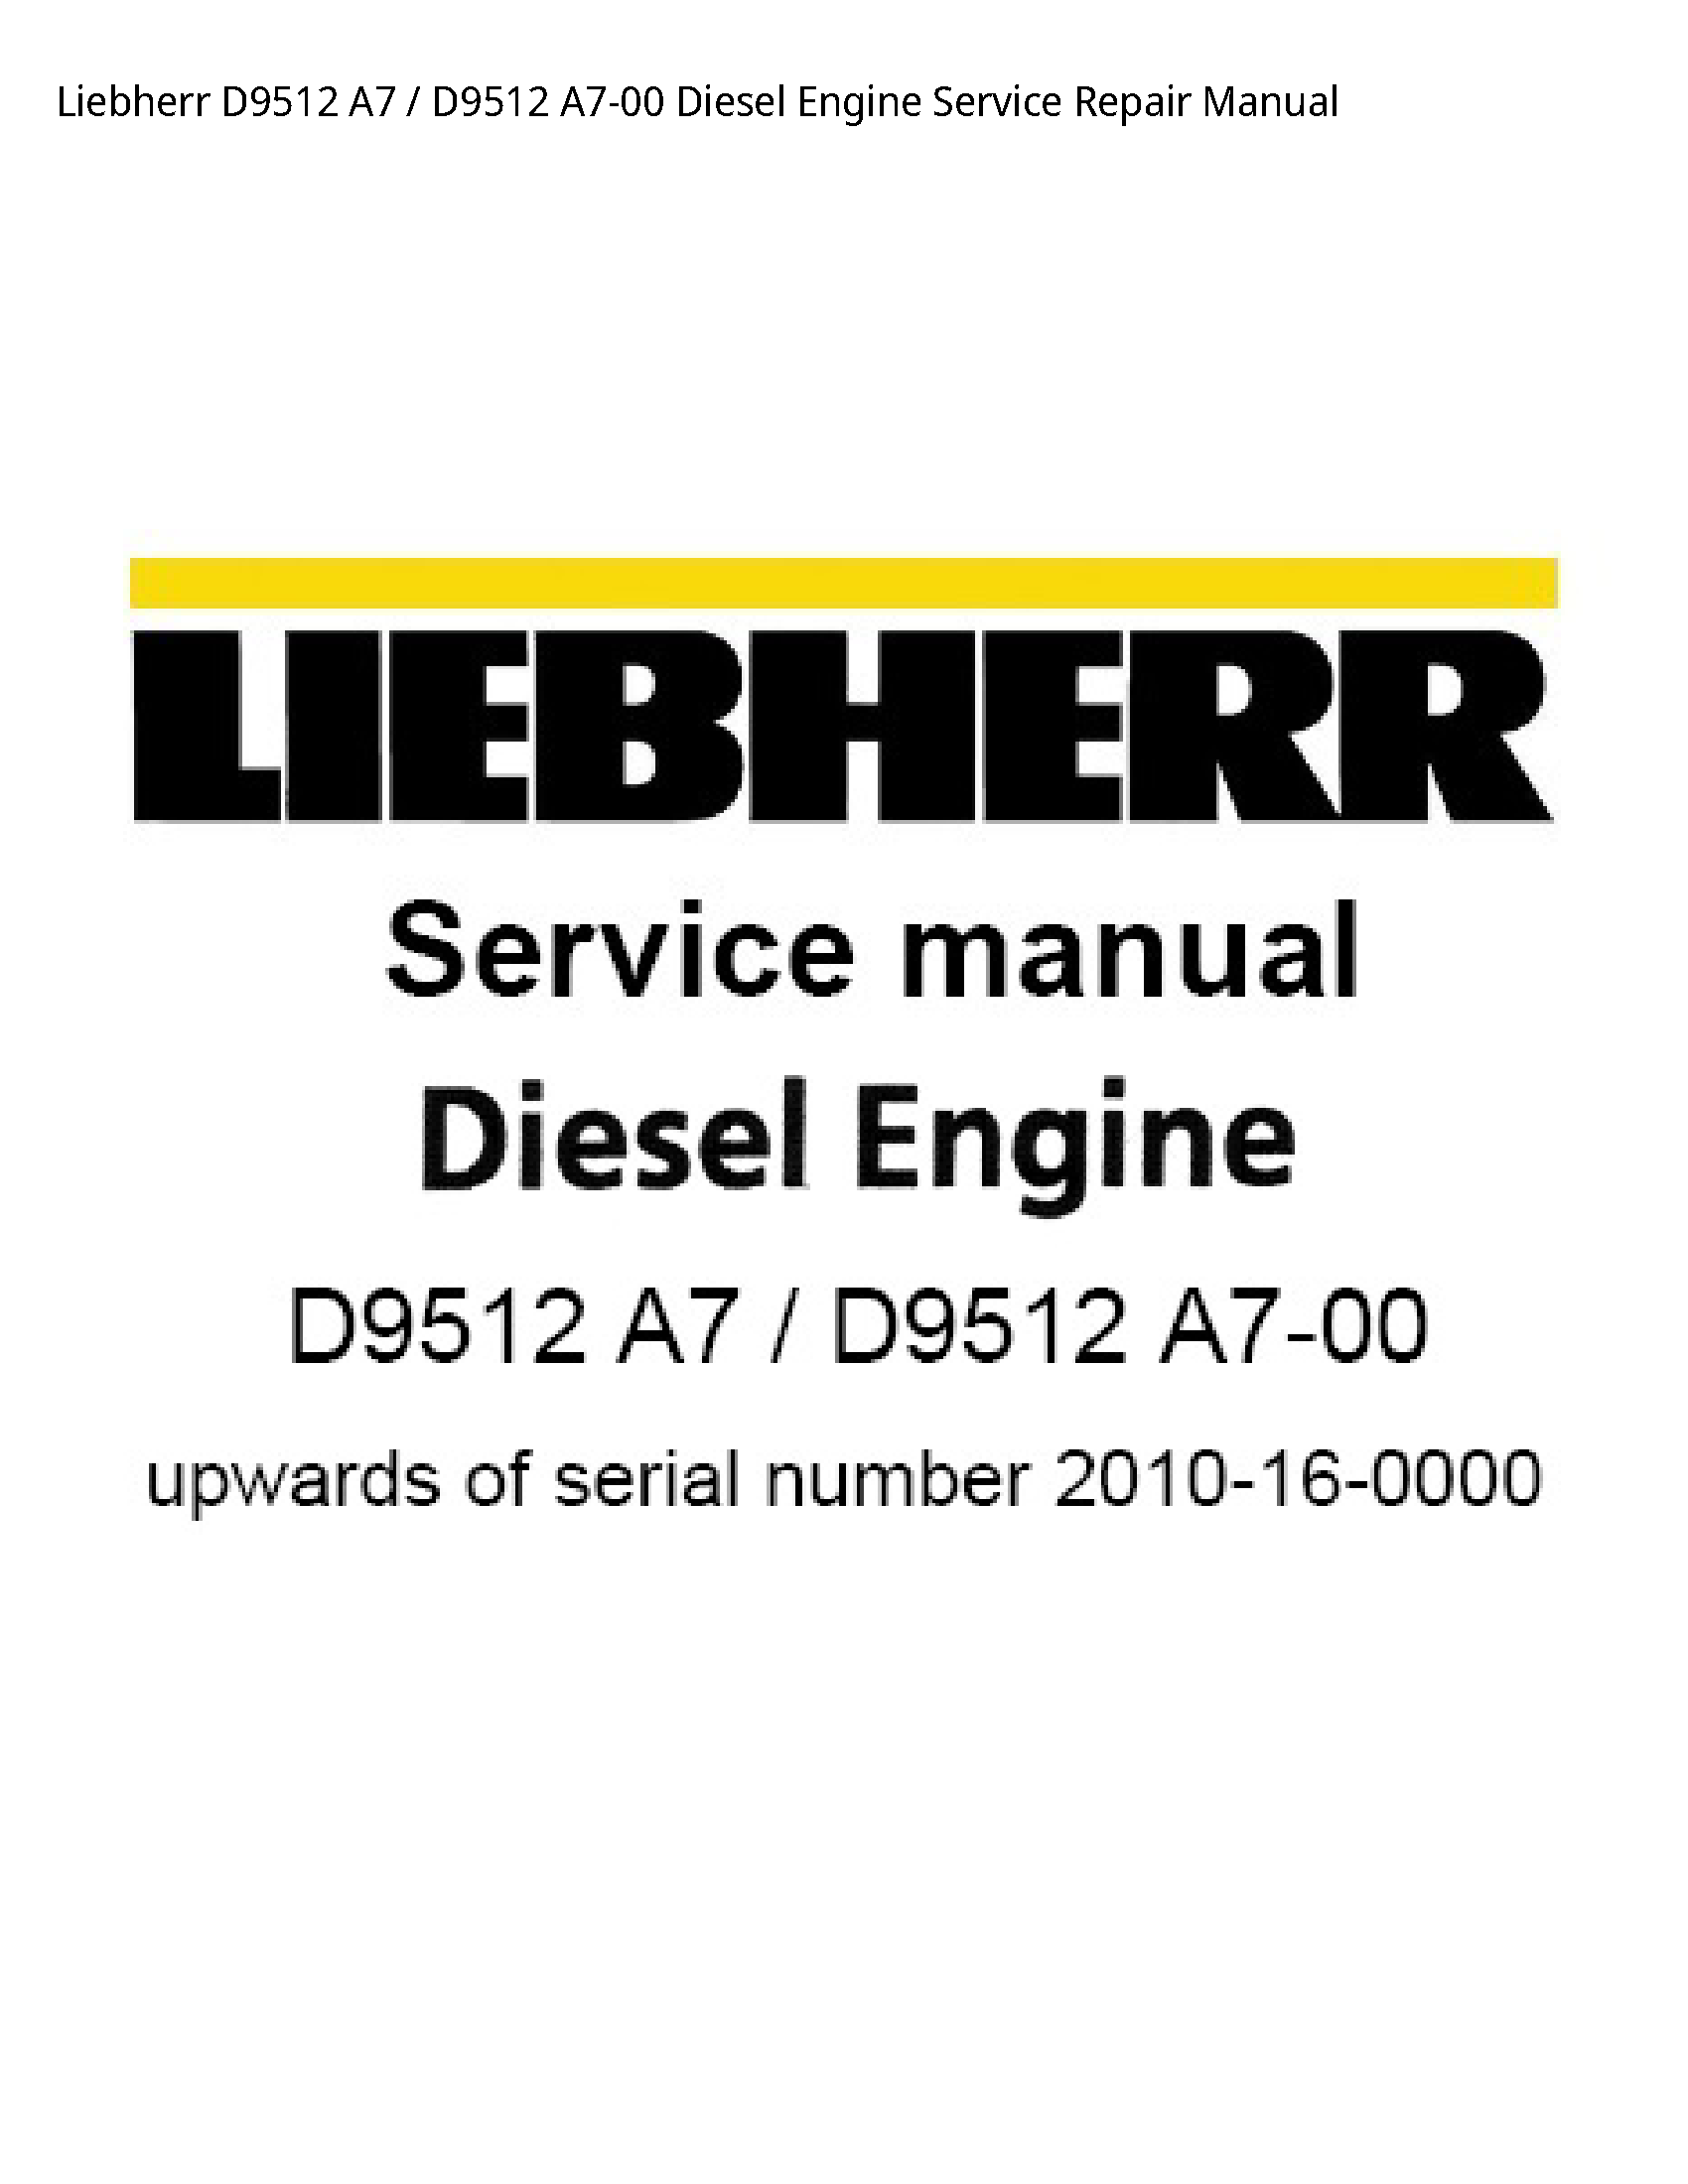 Liebherr D9512 Diesel Engine manual